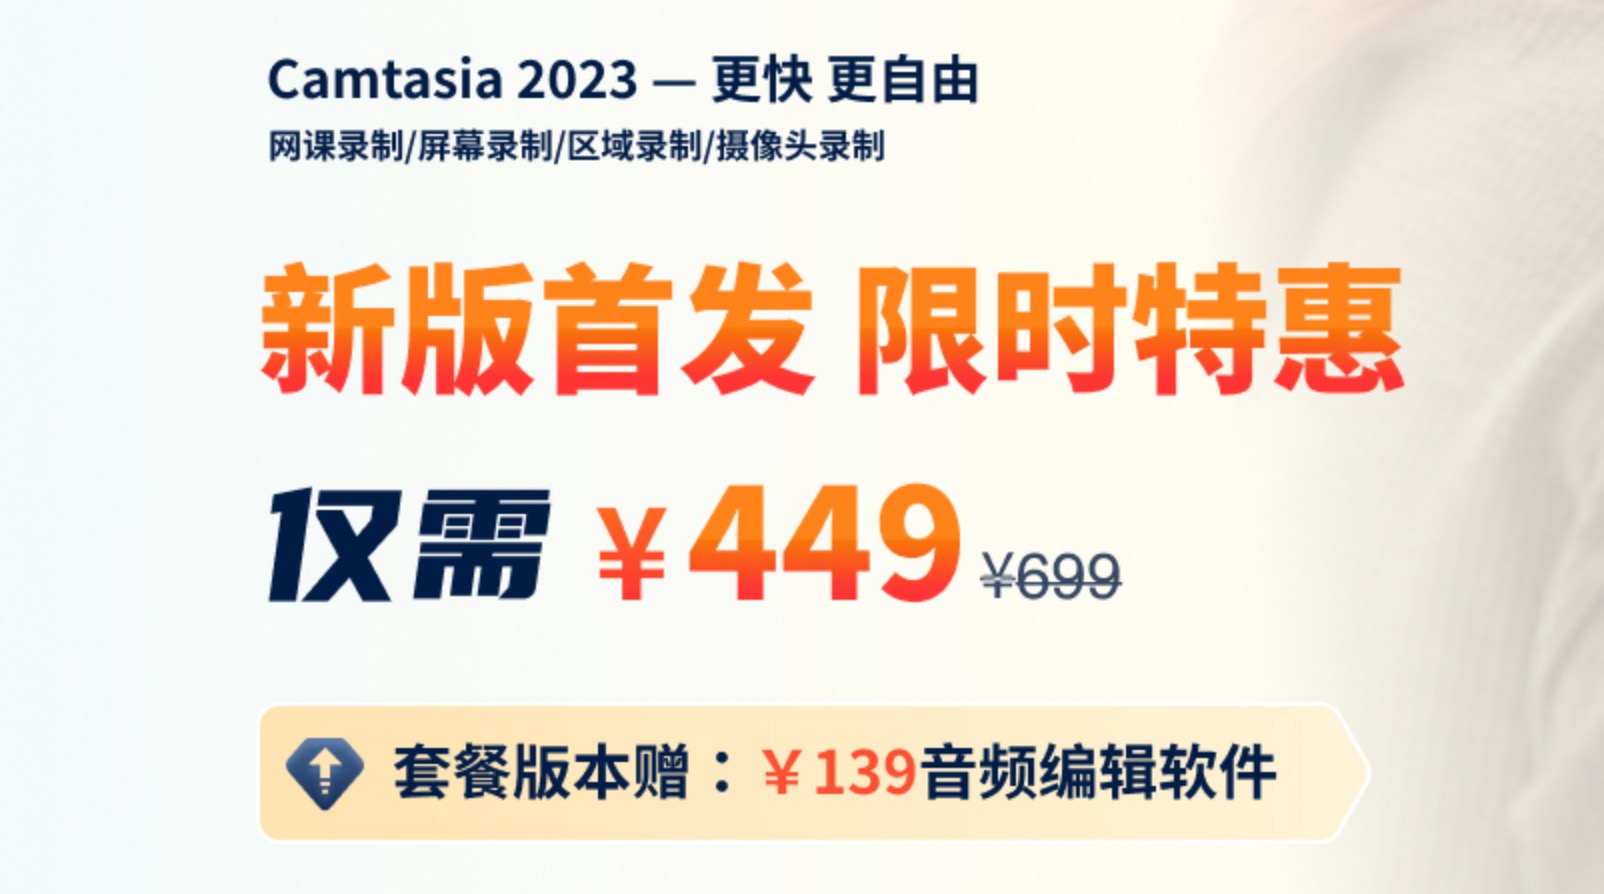 【正版】Camtasia 2023 简体中文 – 更快更自由